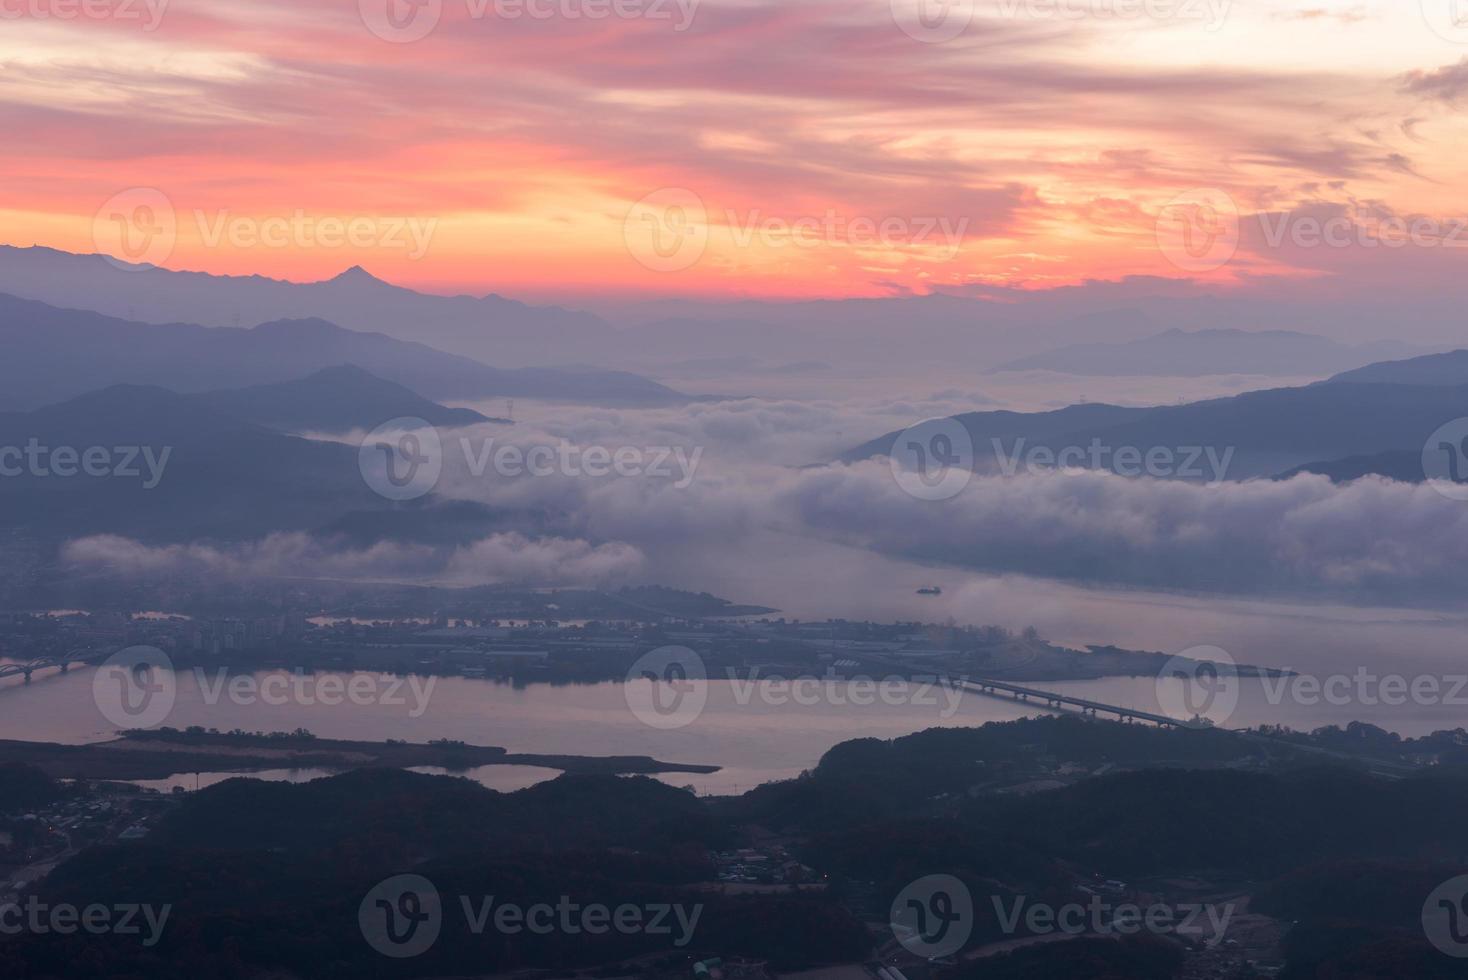 montanhas é coberta pela névoa da manhã e nascer do sol foto